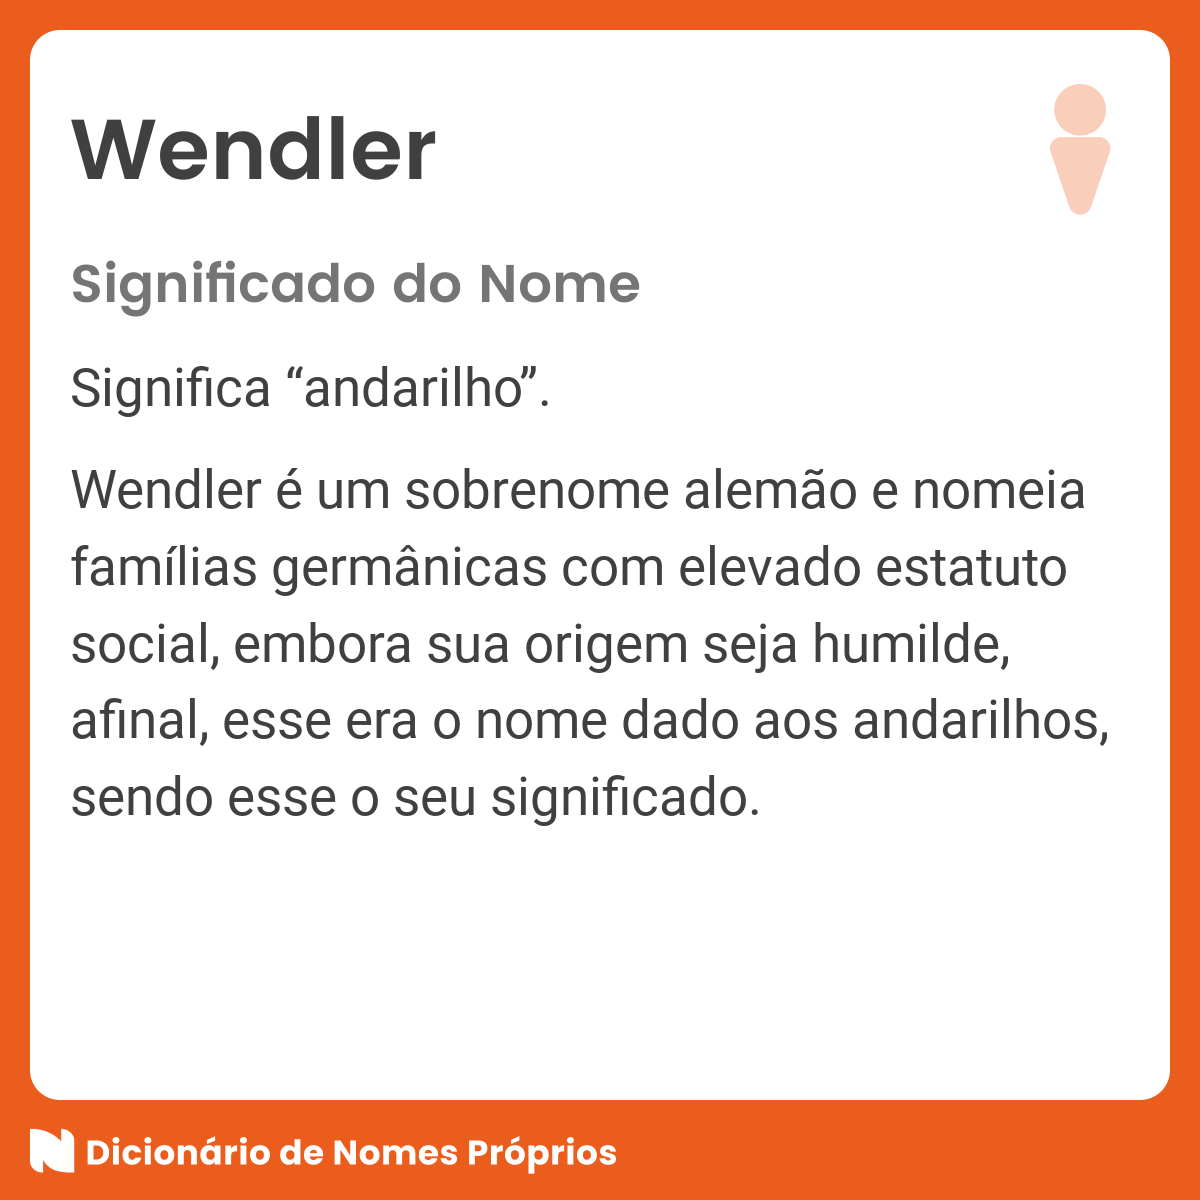 Encontro da Família Wendler - Brasão da família Wendler.